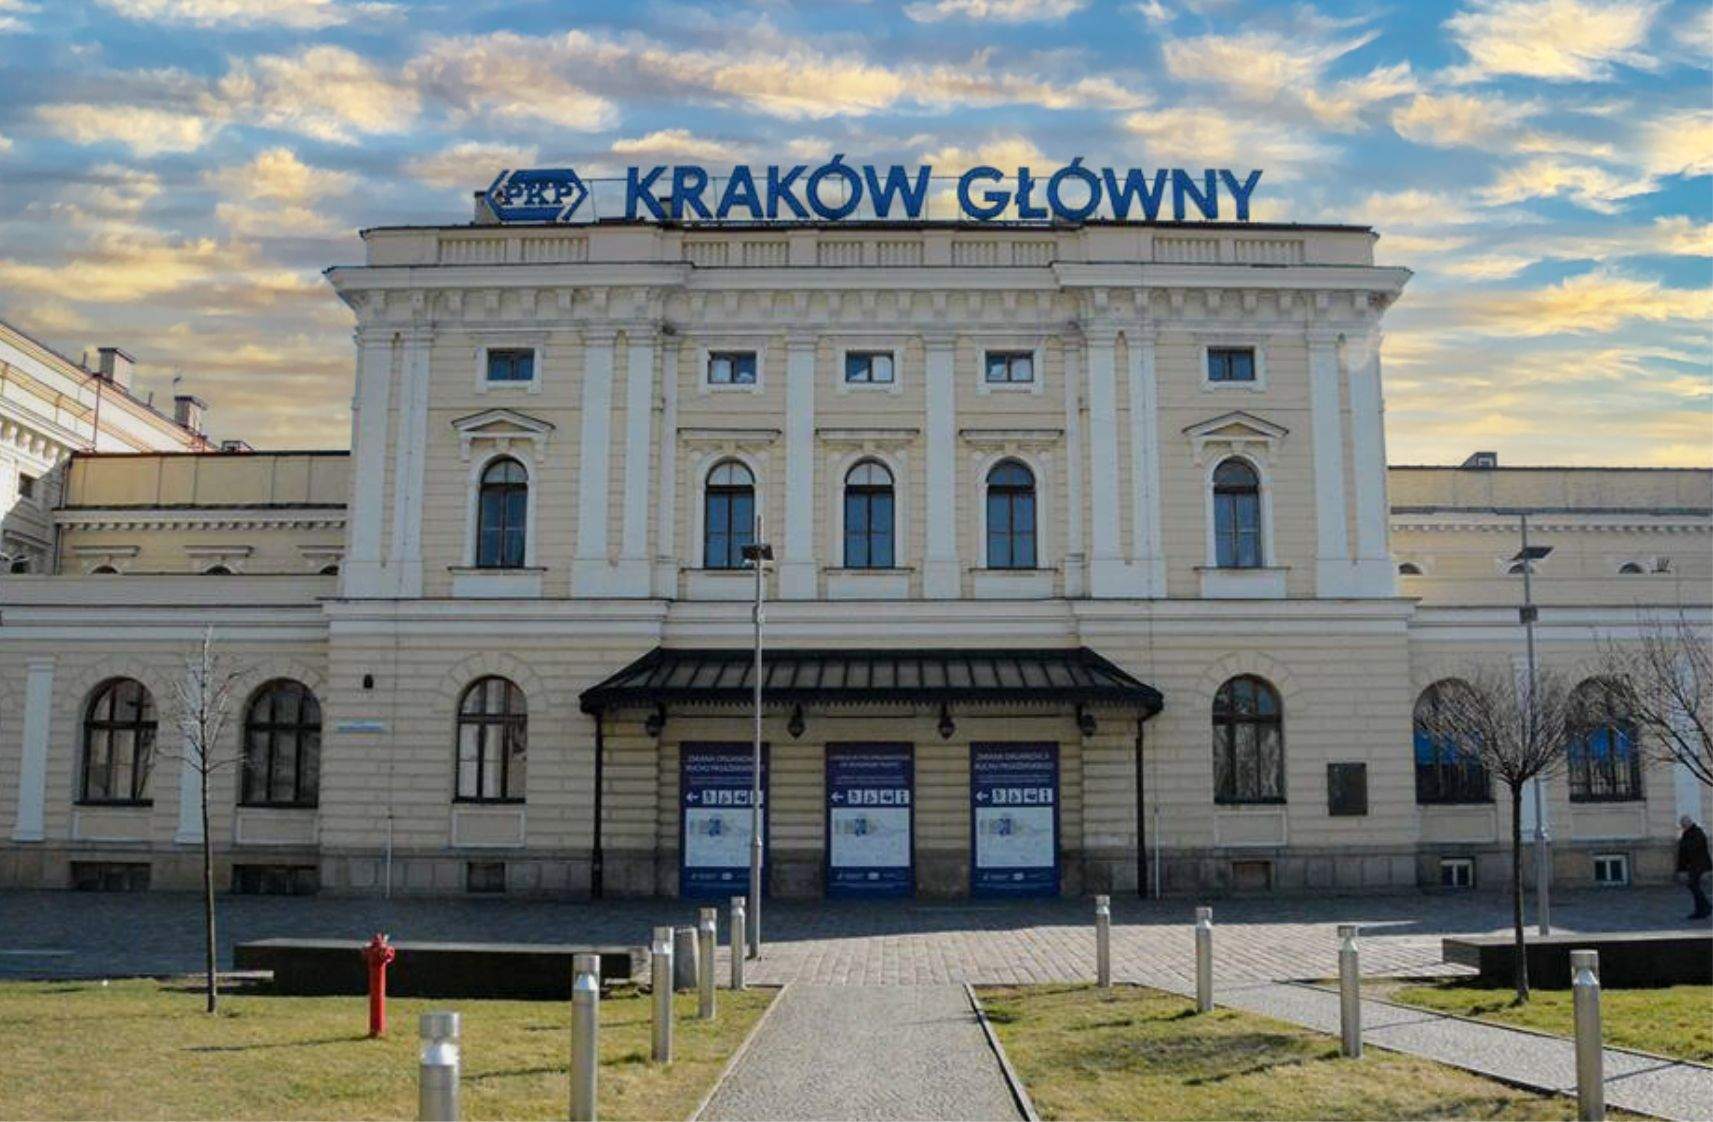 Kraków Główny Railway Station